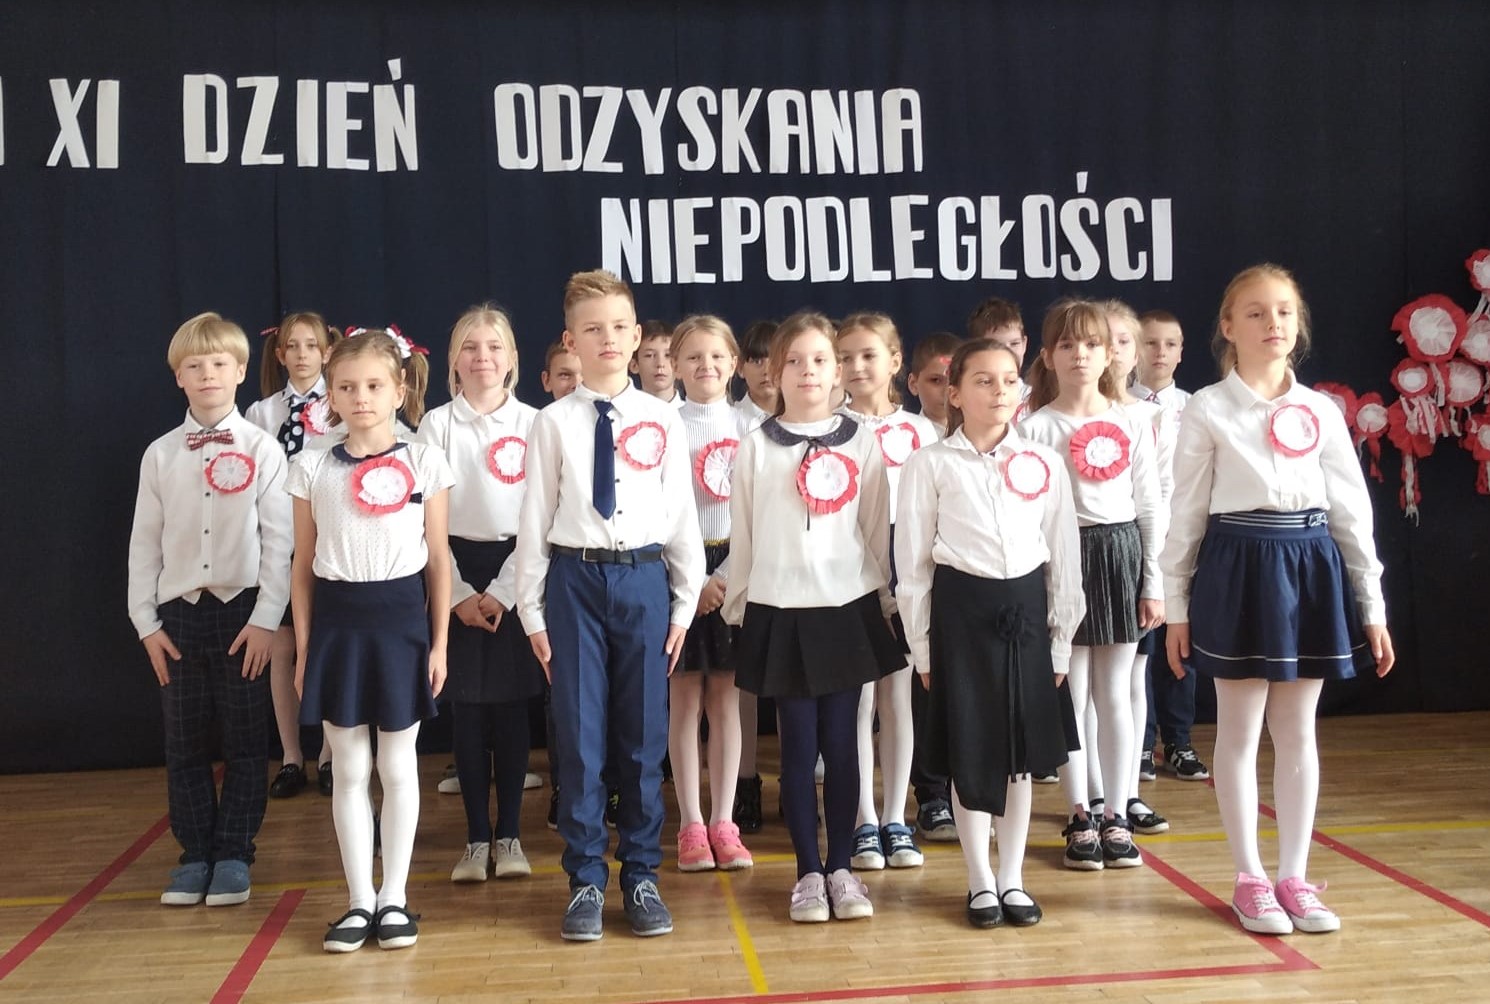 18 ubranych na galowo dzieci stoi na sali. W tyle godło Polski na tle biało czerwonej flagi, a nad dziećmi napis: 11 XI dzień odzyskania niepodległości